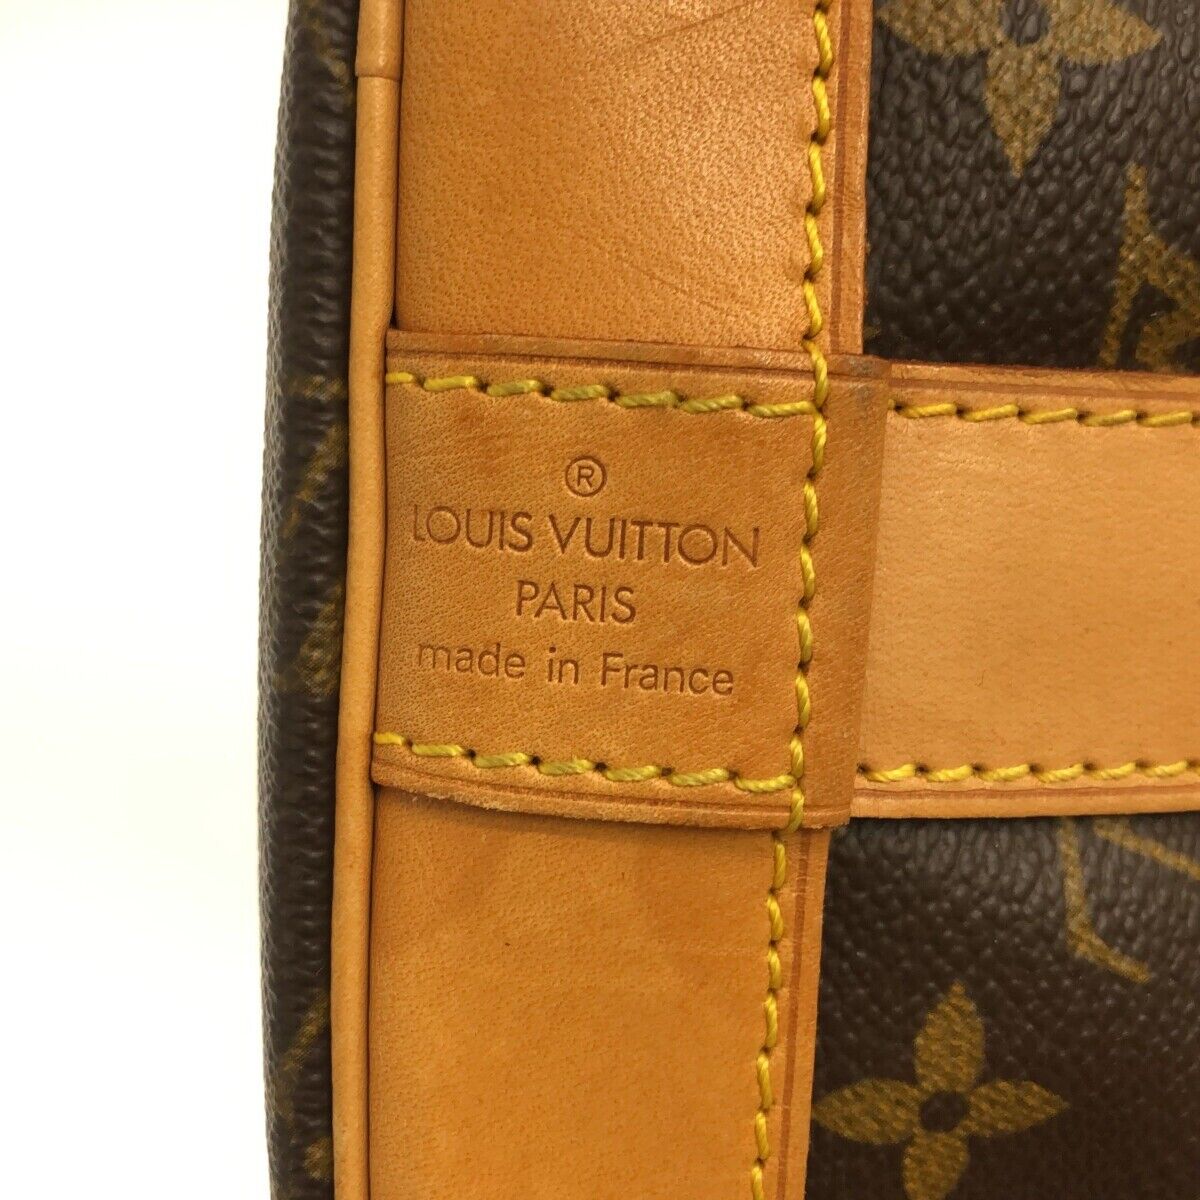 Louis Vuitton Cruiser Bag 40 M41139